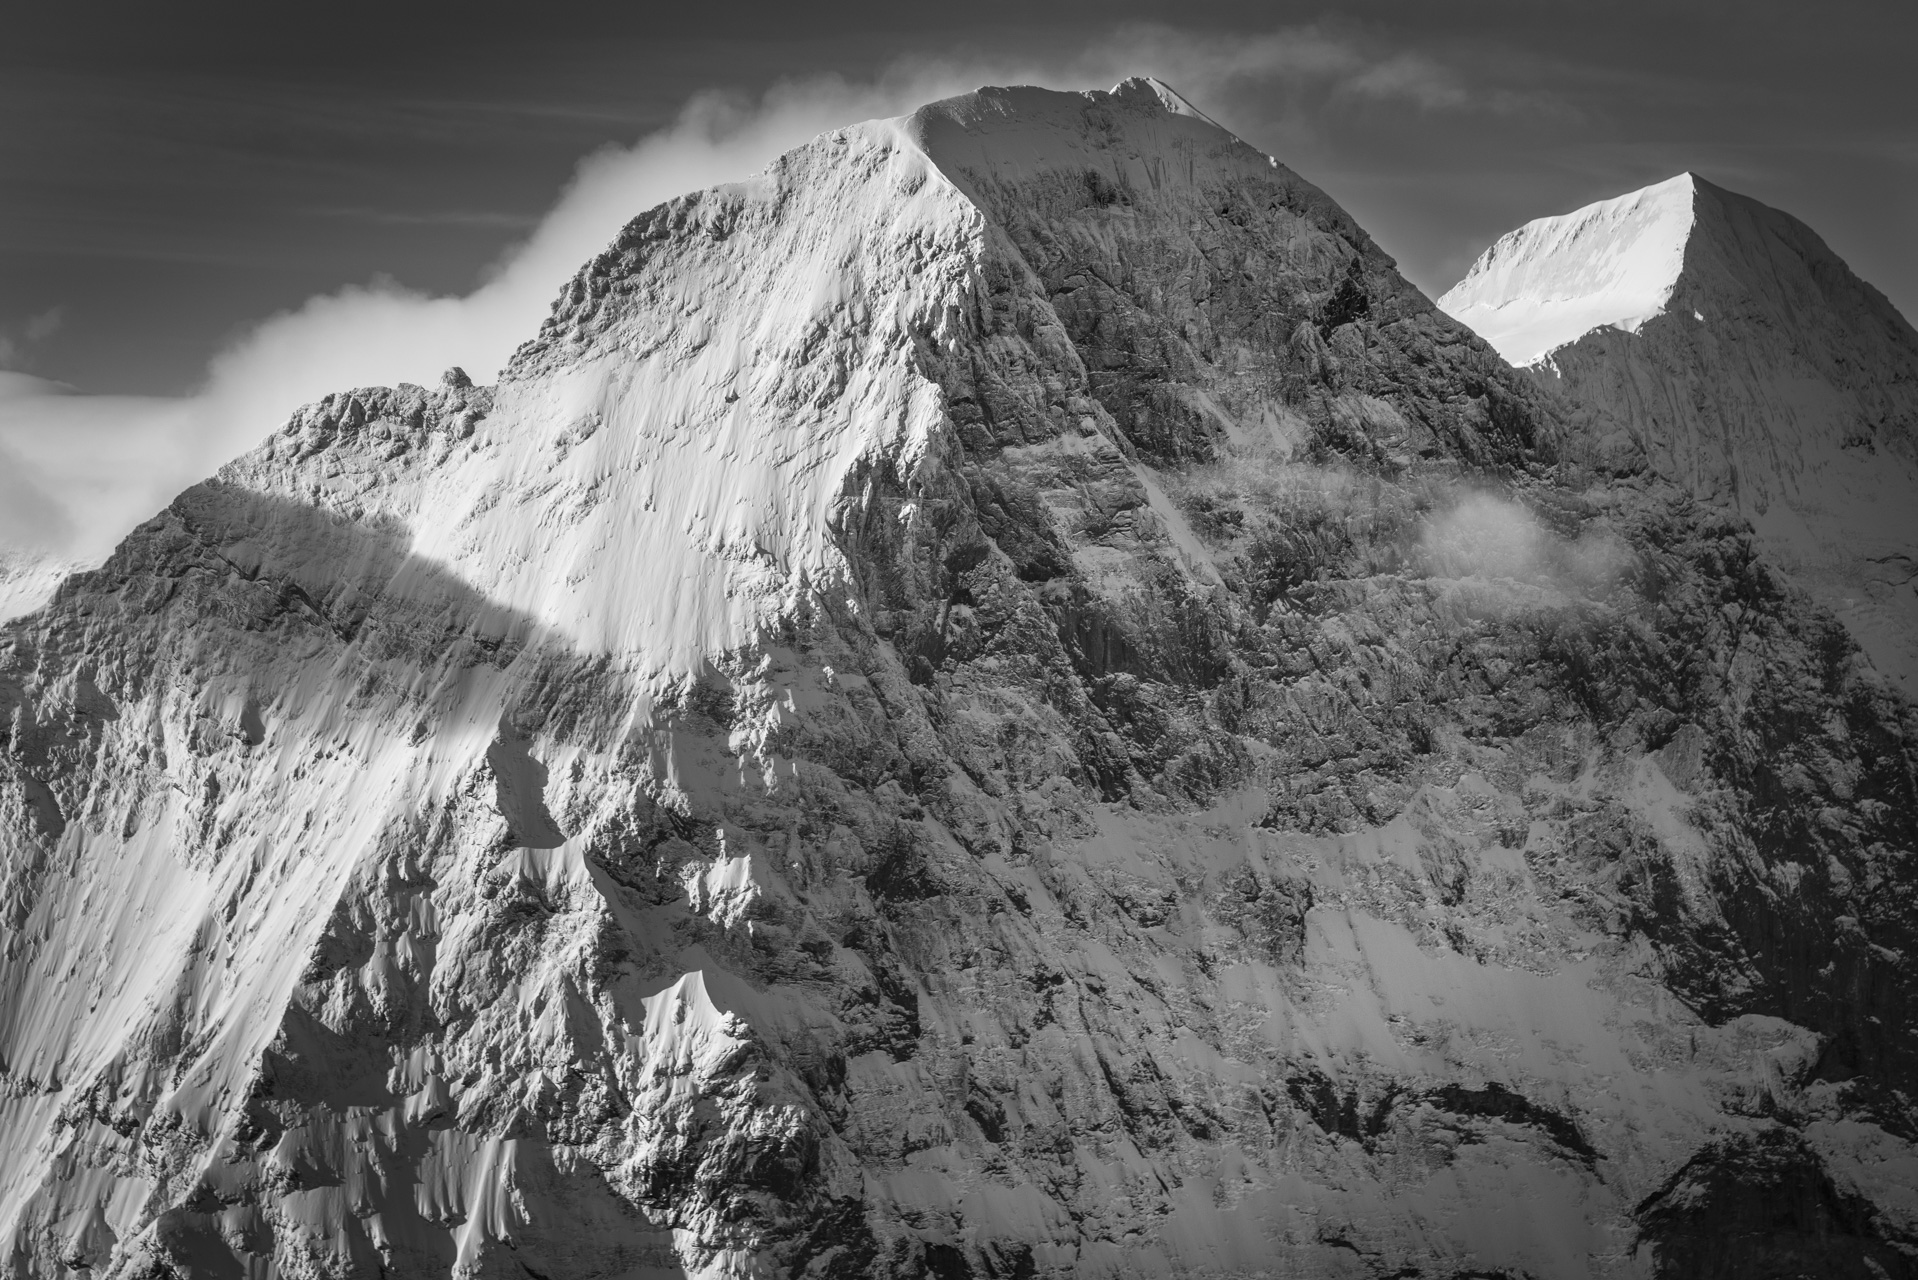 Grindelwald Suisse - photo neige montagne de Eiger - Monch - photo lever de soleil montagne